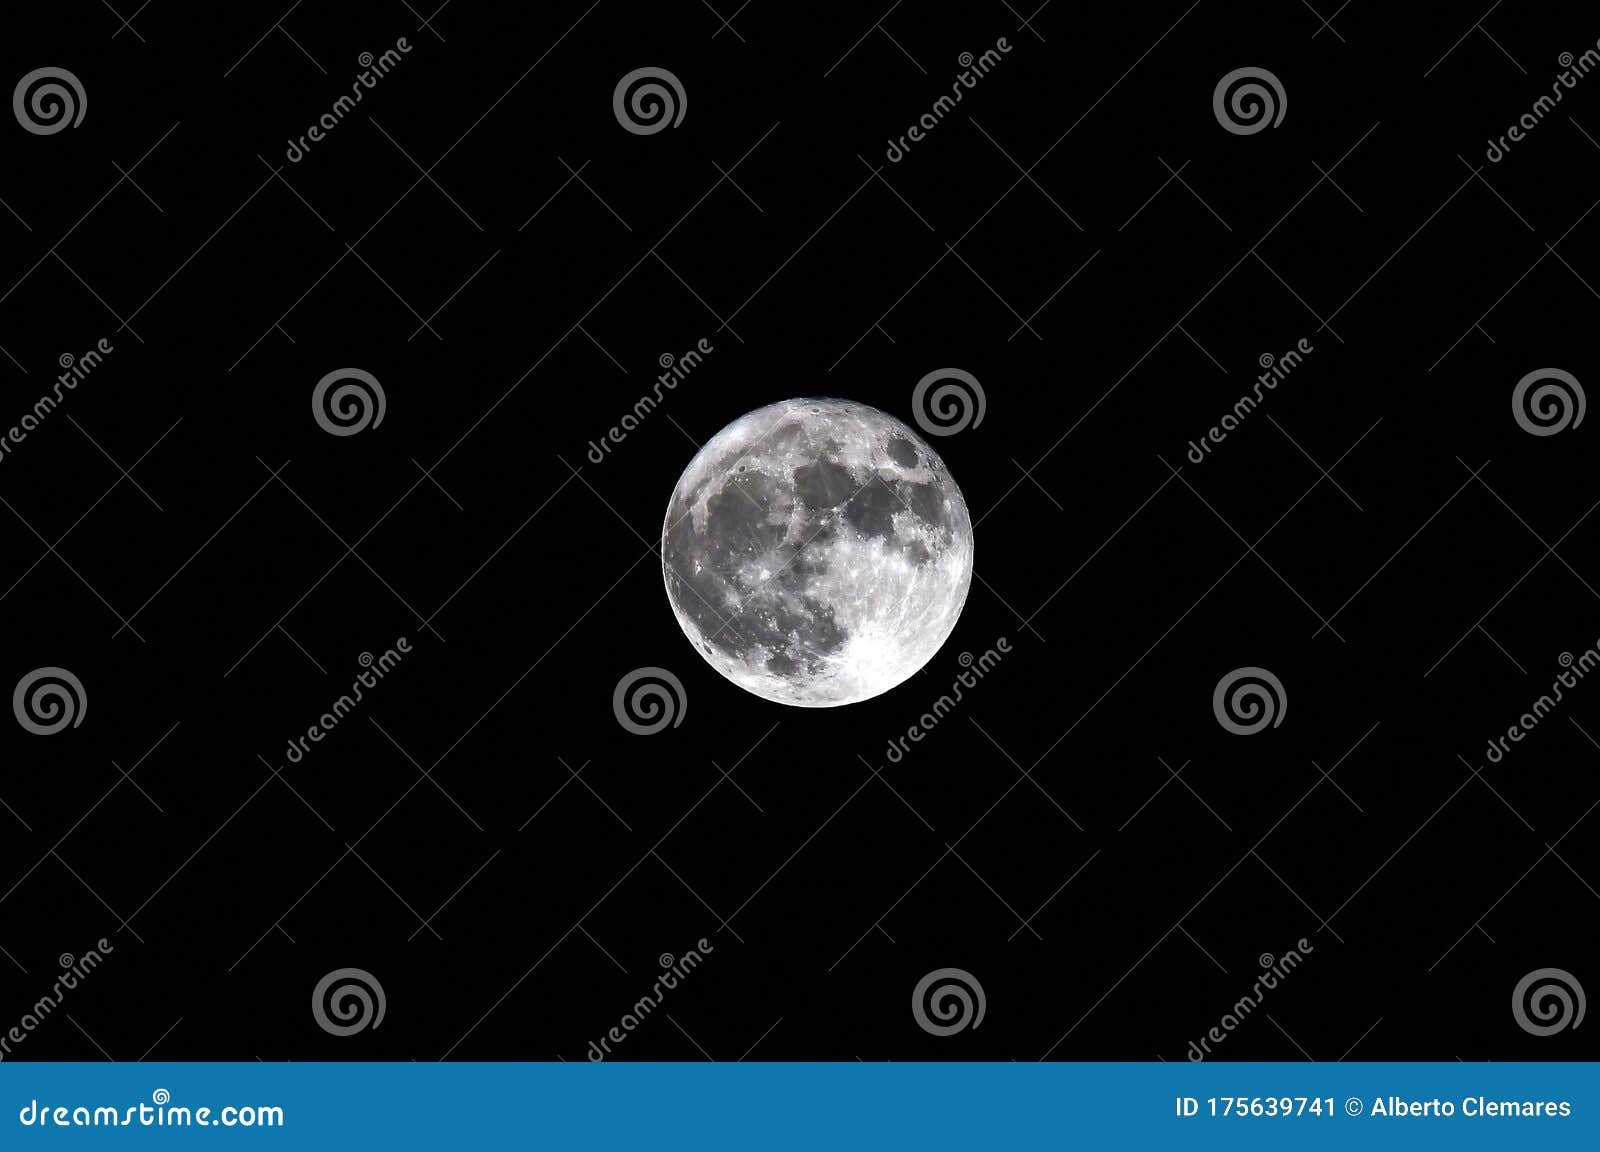 a nice moon at night